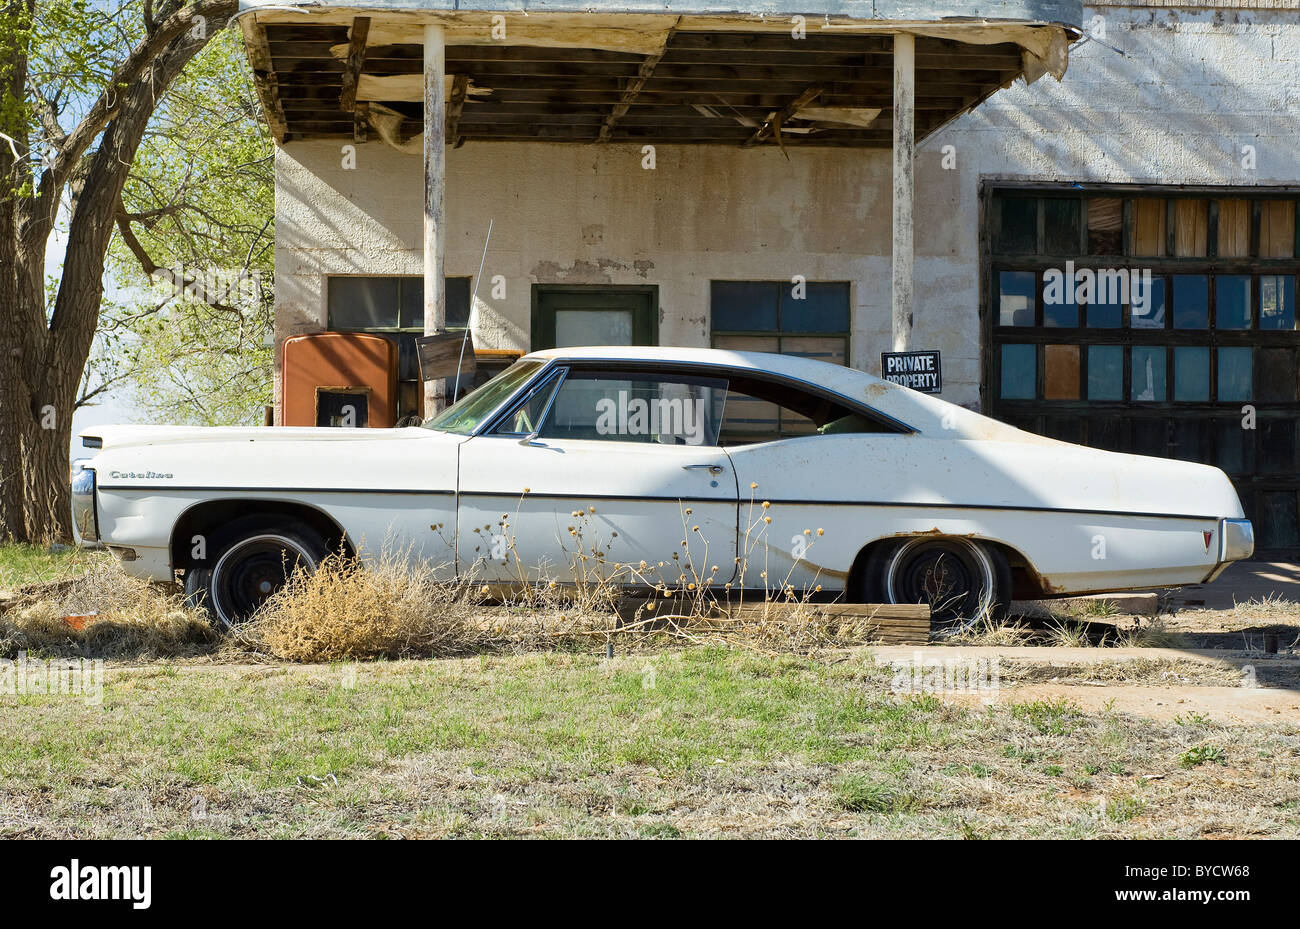 Pontiac Catalina abandoned in Glenrio, Texas Stock Photo